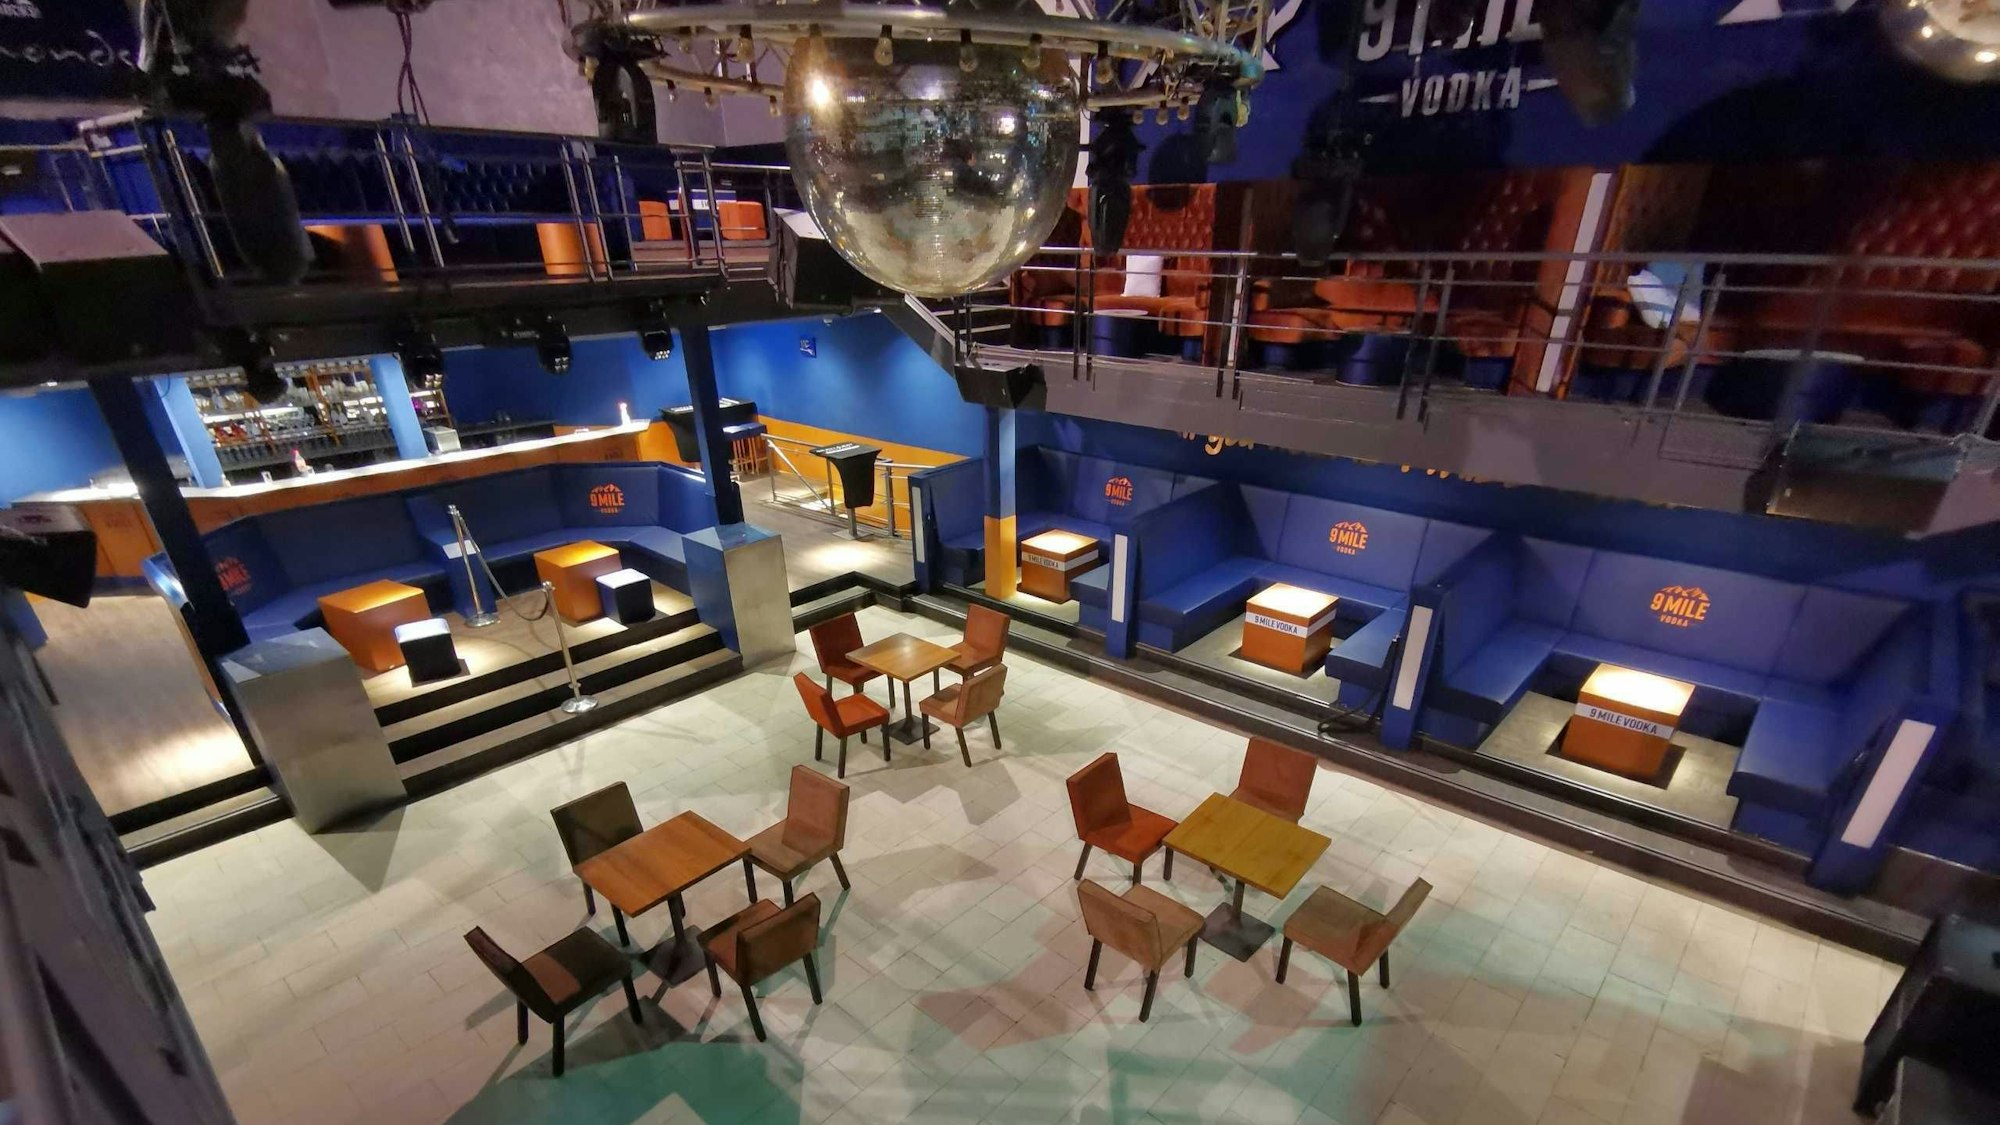 Auf der Tanzfläche des Diamonds Club auf den Kölner Ringen standen Tische und Stühle.